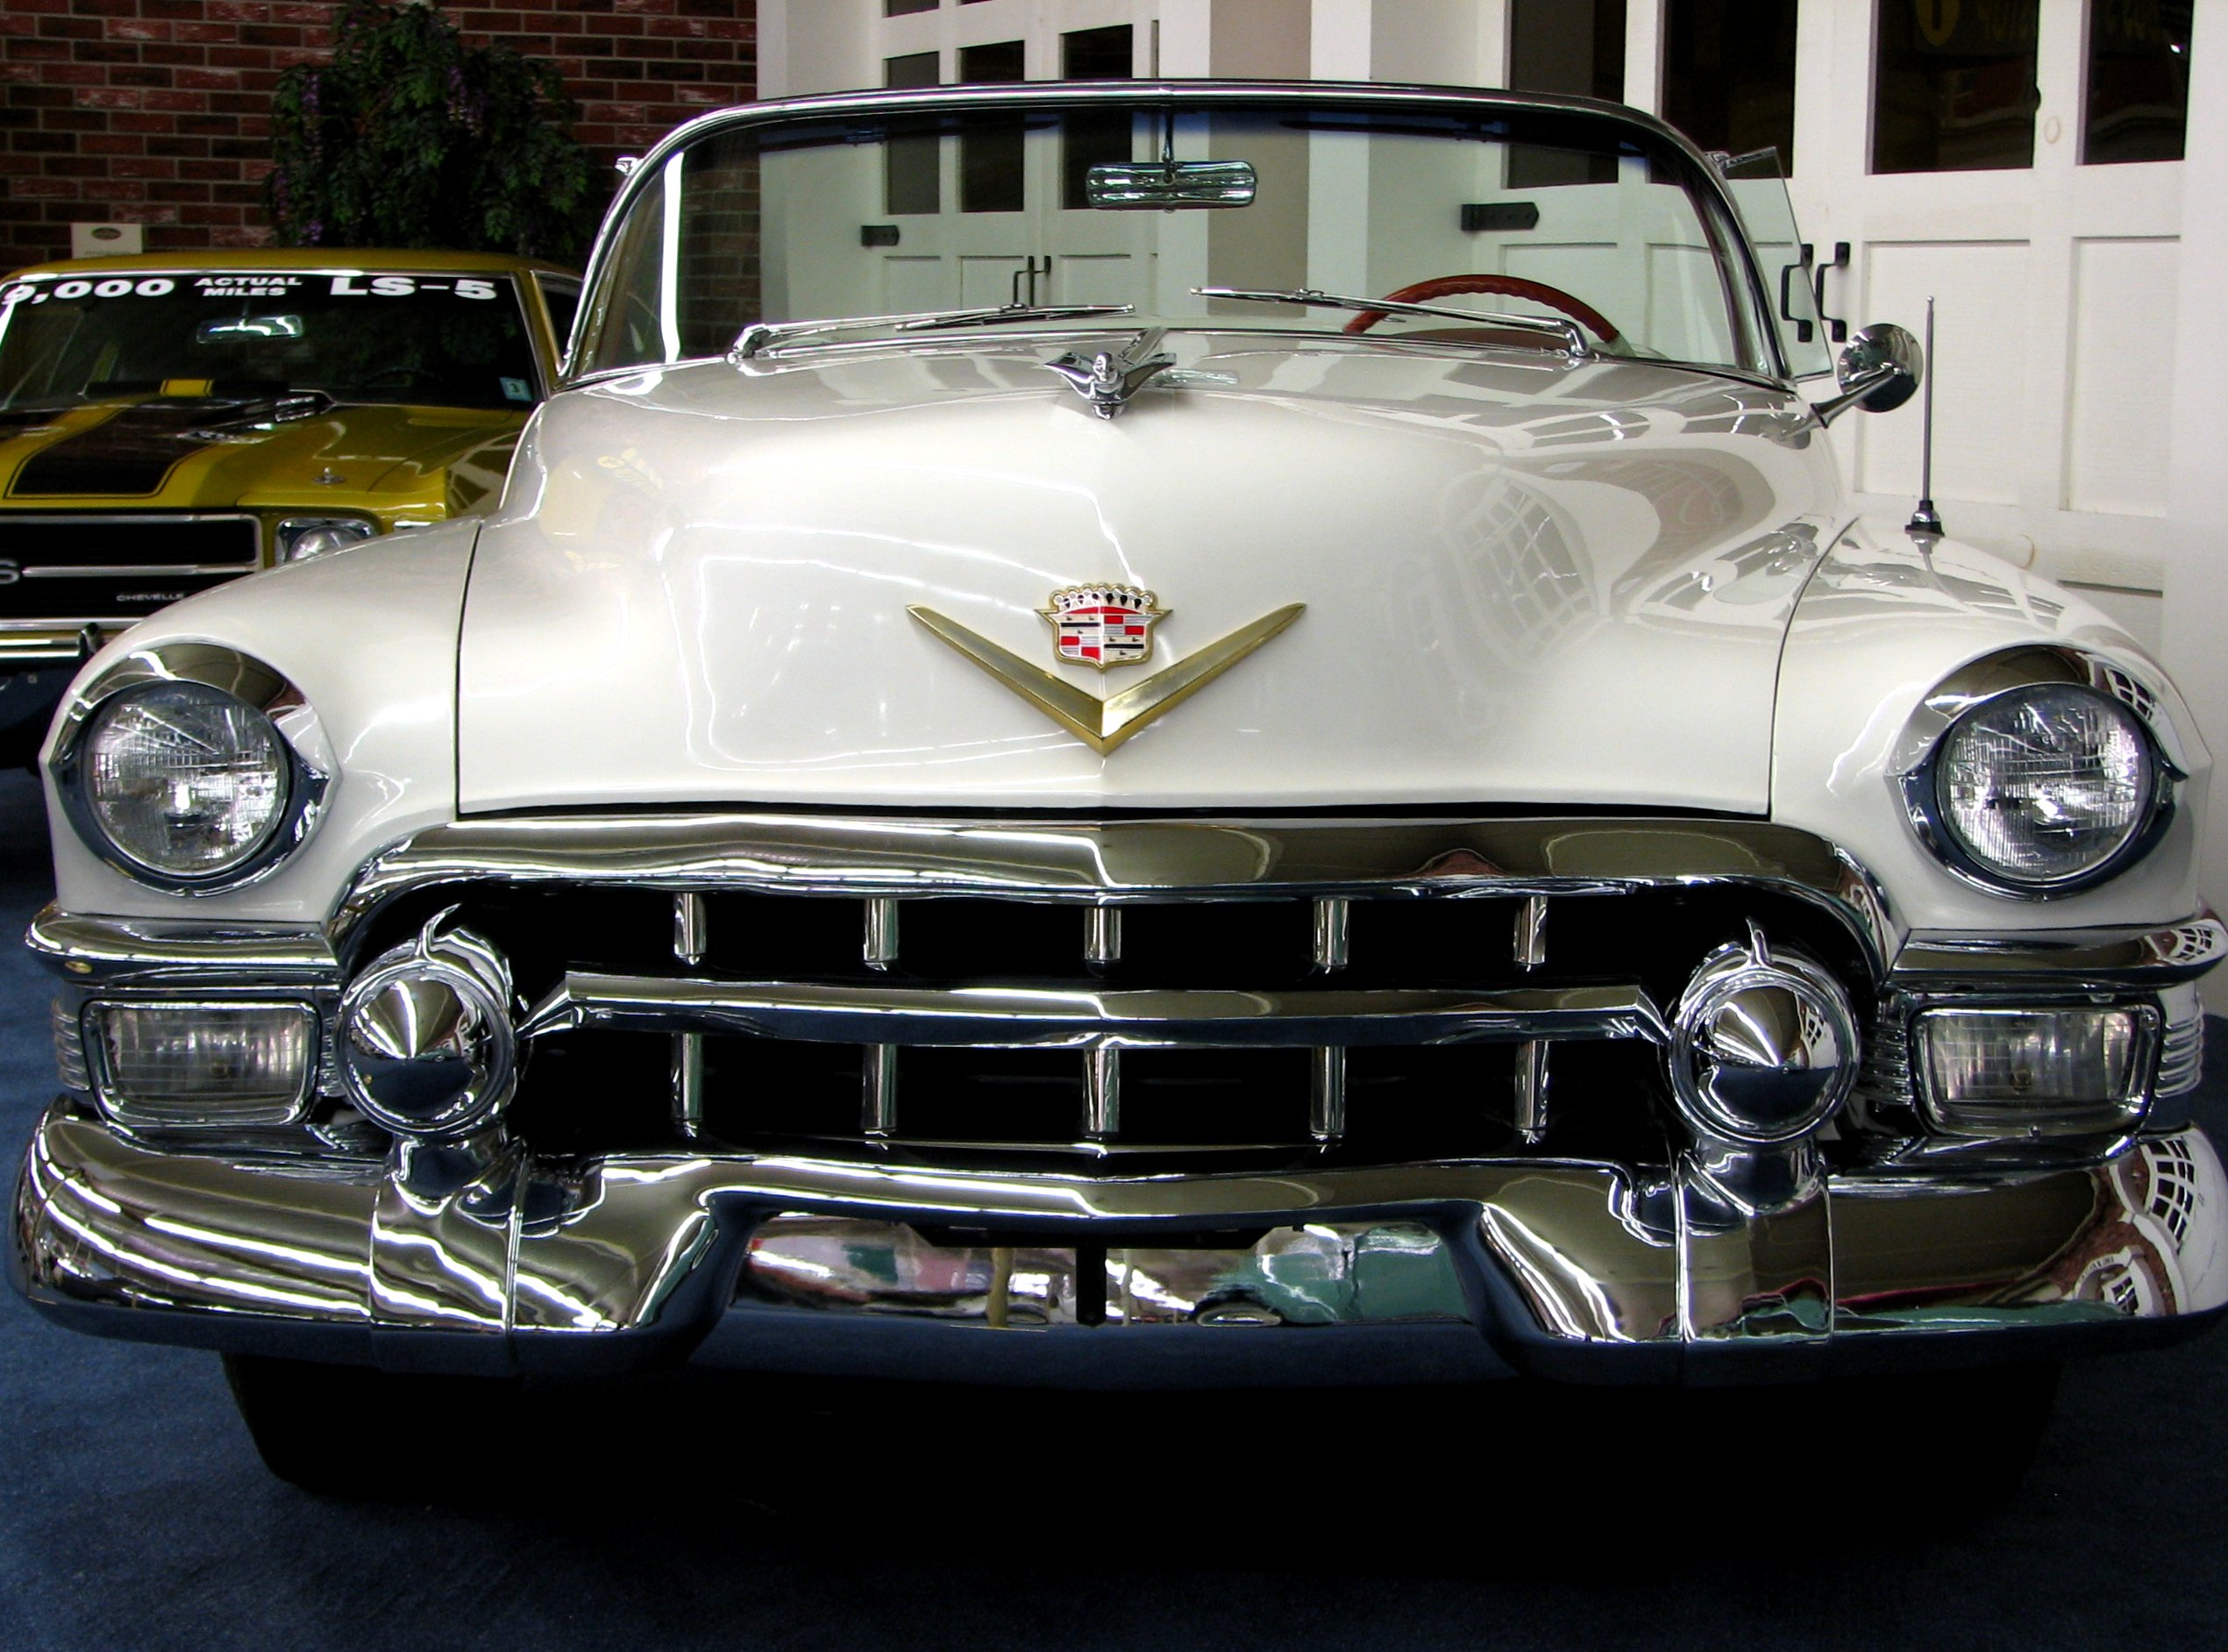  Front view of 1953 Cadillac Eldorado